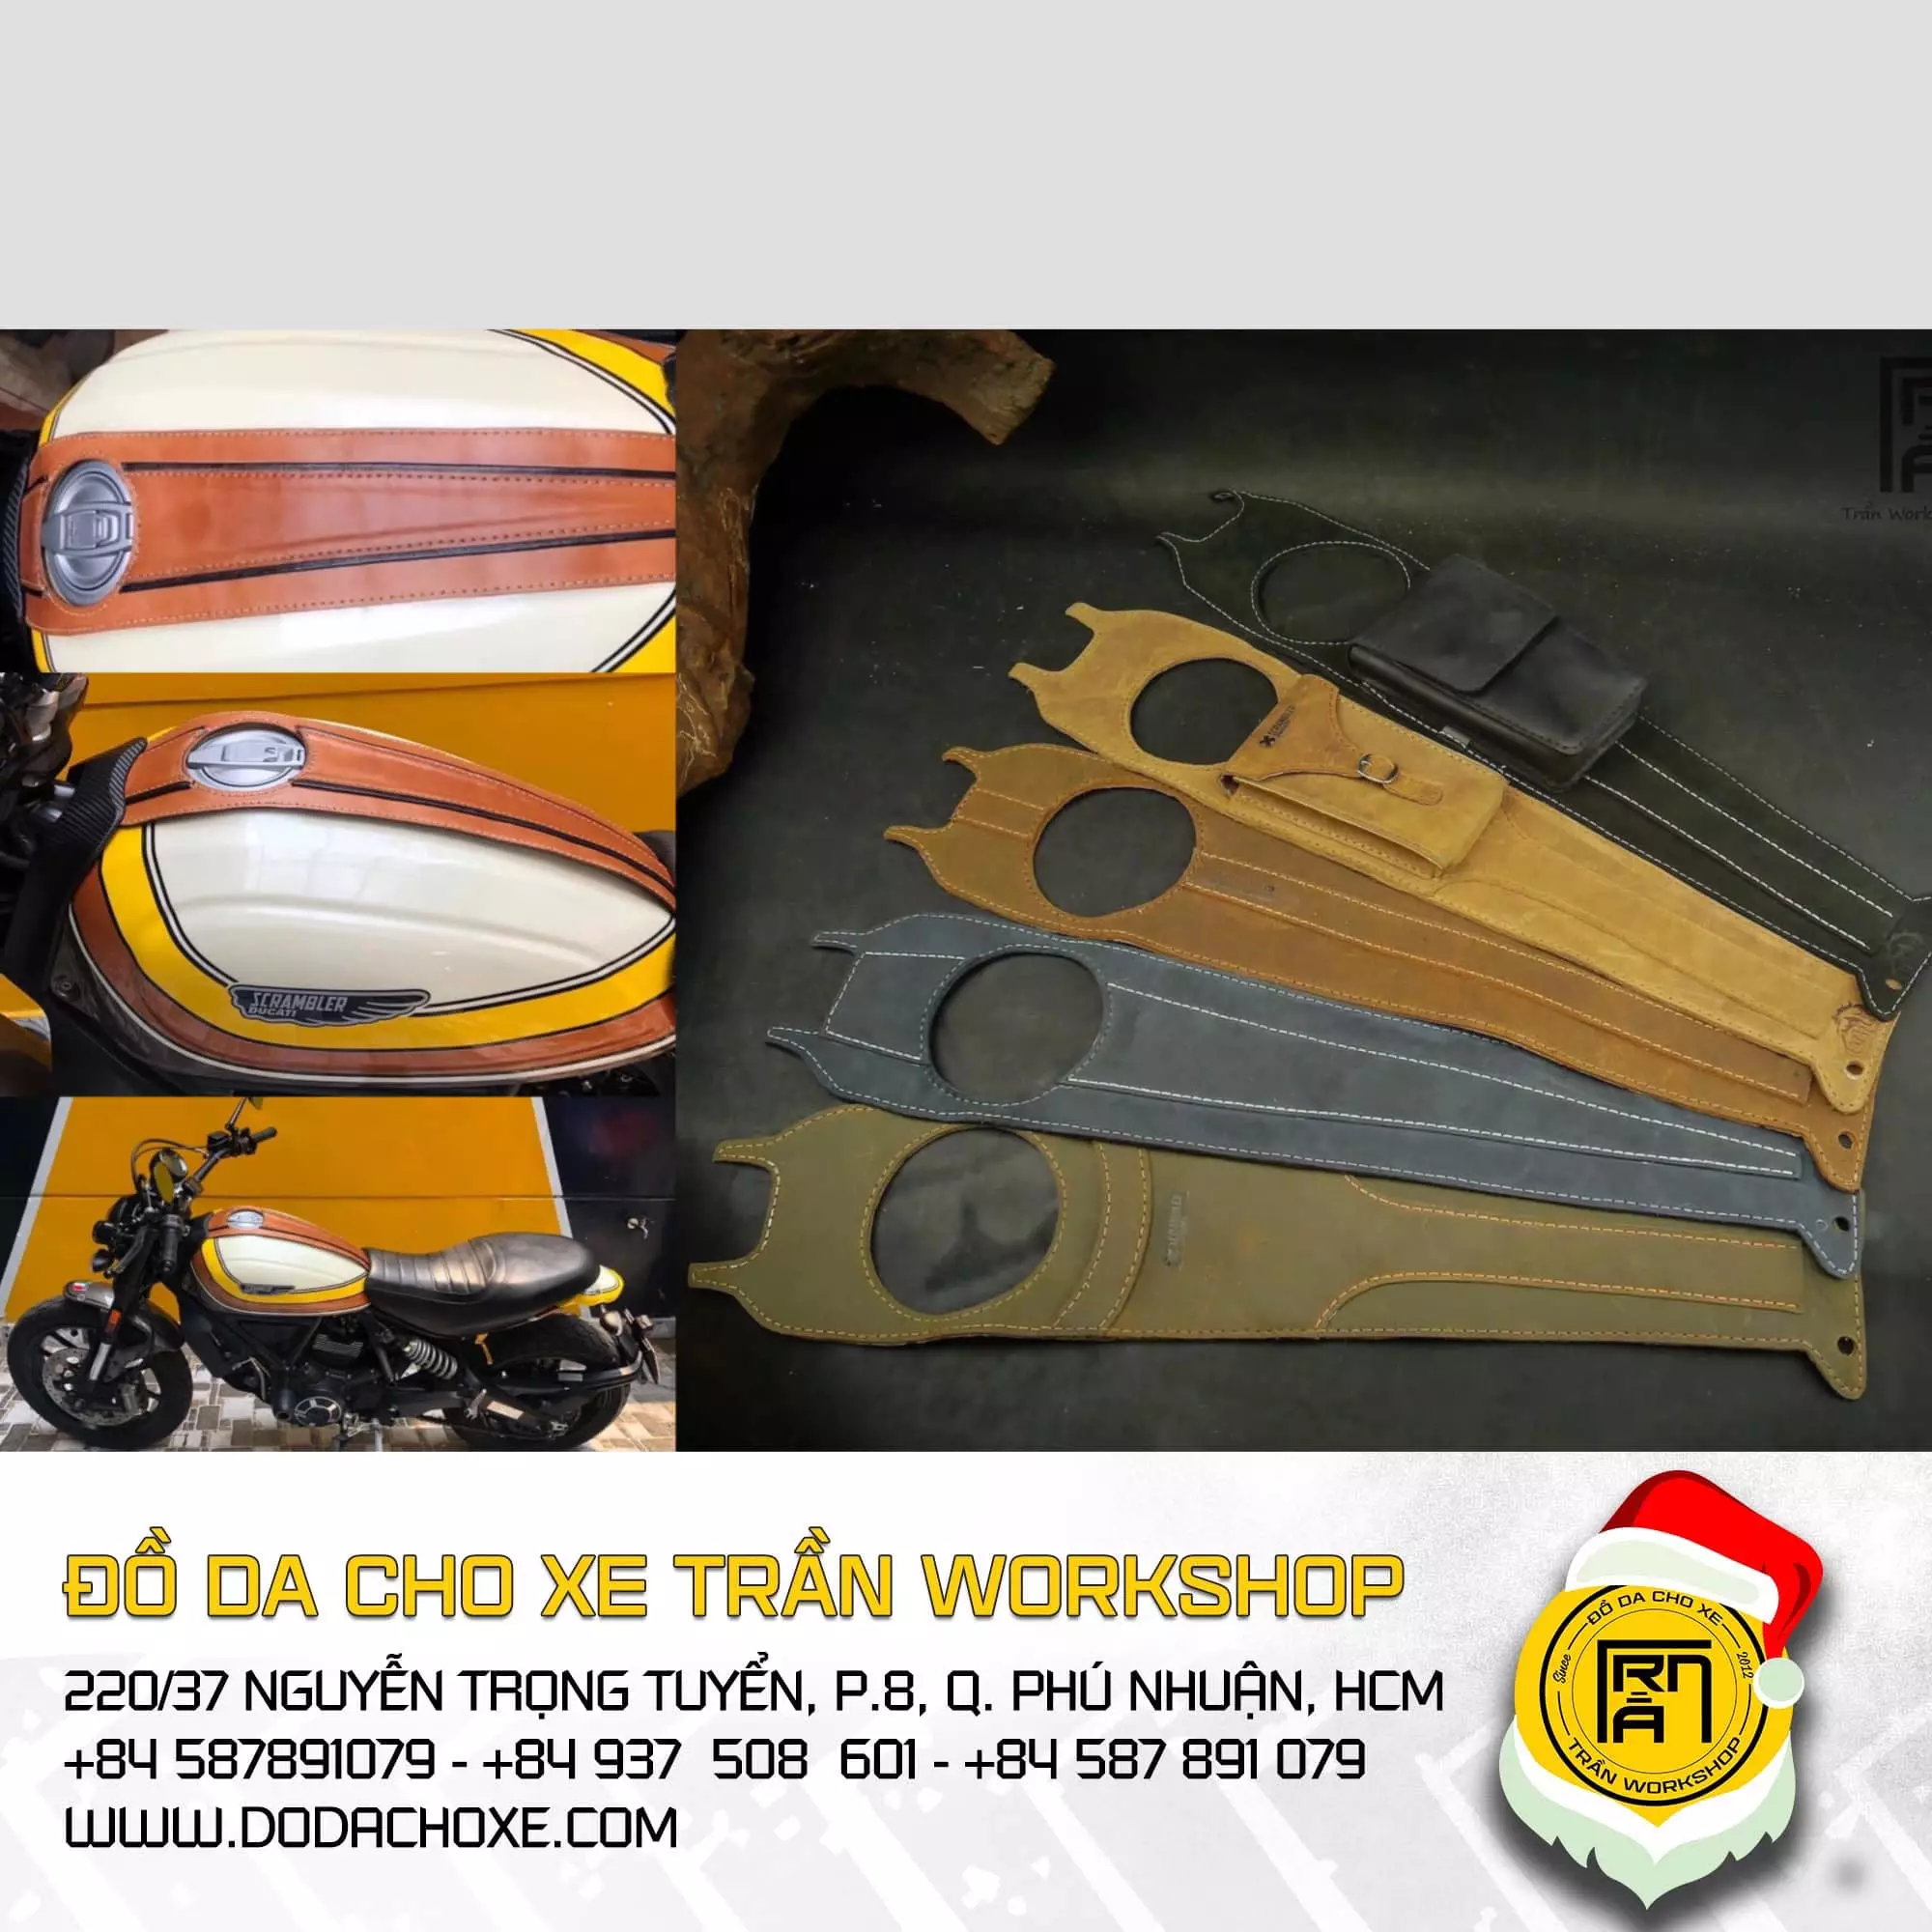 Ducati Scrambler 2022 - Đồ Da Cho Xe Trần Workshop